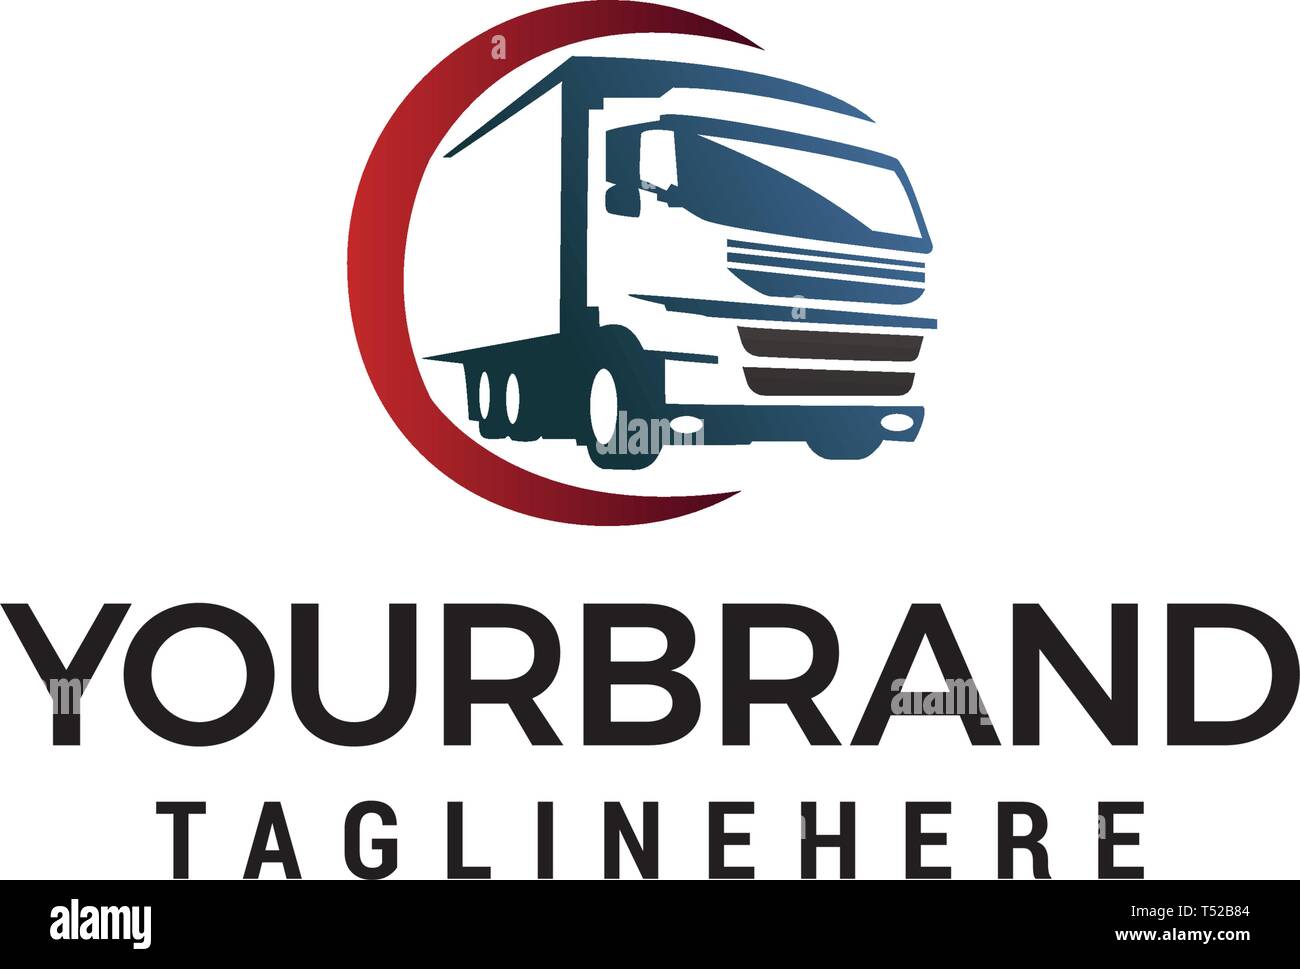 Truck Transportation Logo